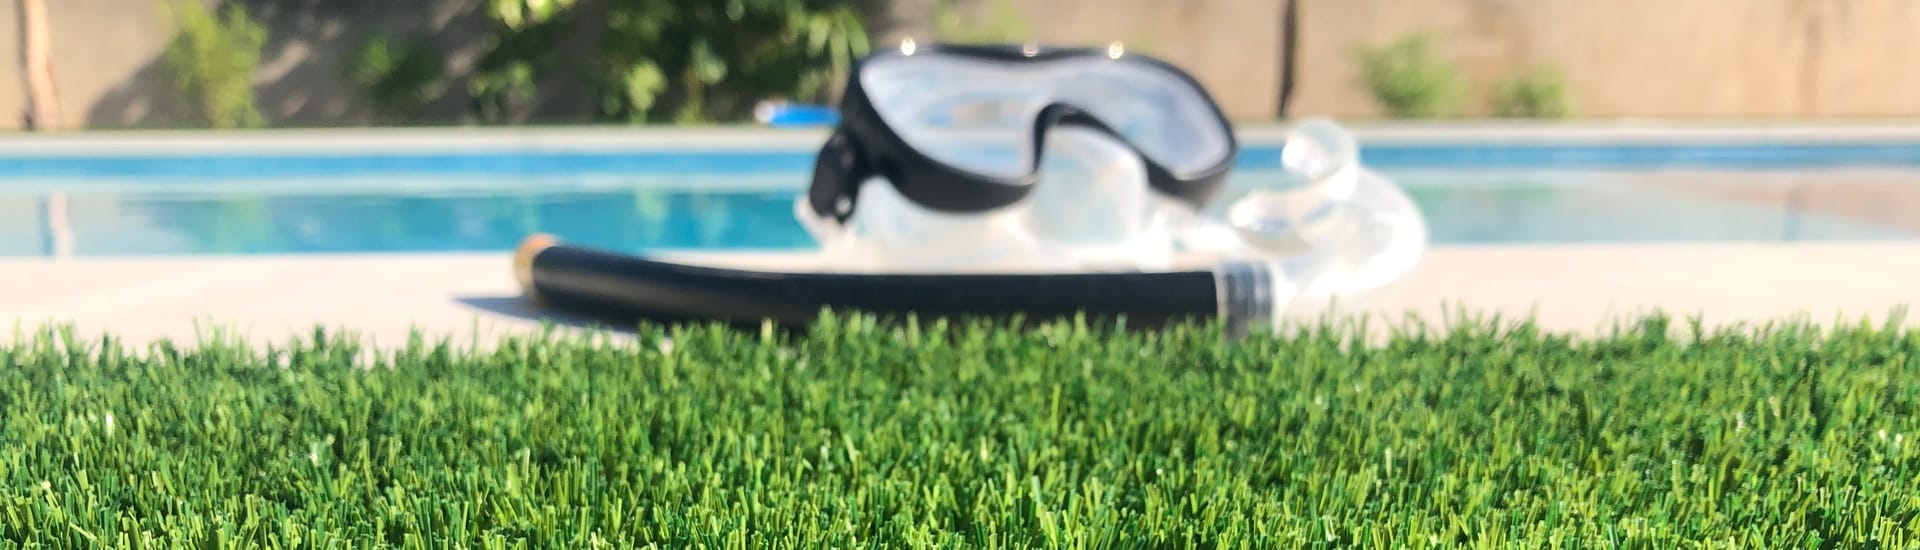 Modelos de grama artificial para piscina